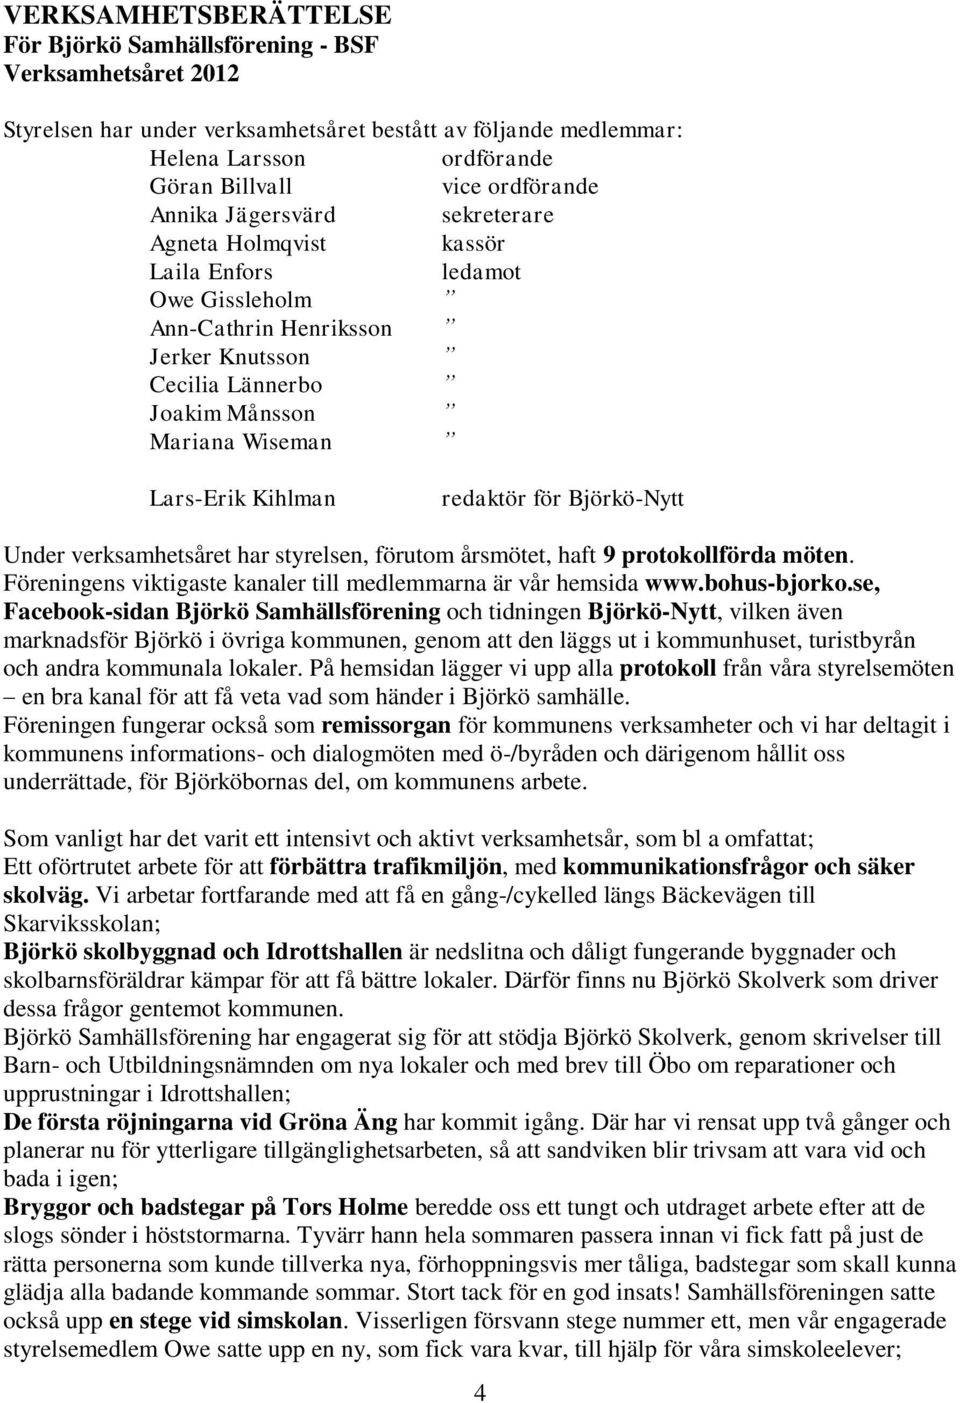 Kihlman redaktör för Björkö-Nytt Under verksamhetsåret har styrelsen, förutom årsmötet, haft 9 protokollförda möten. Föreningens viktigaste kanaler till medlemmarna är vår hemsida www.bohus-bjorko.